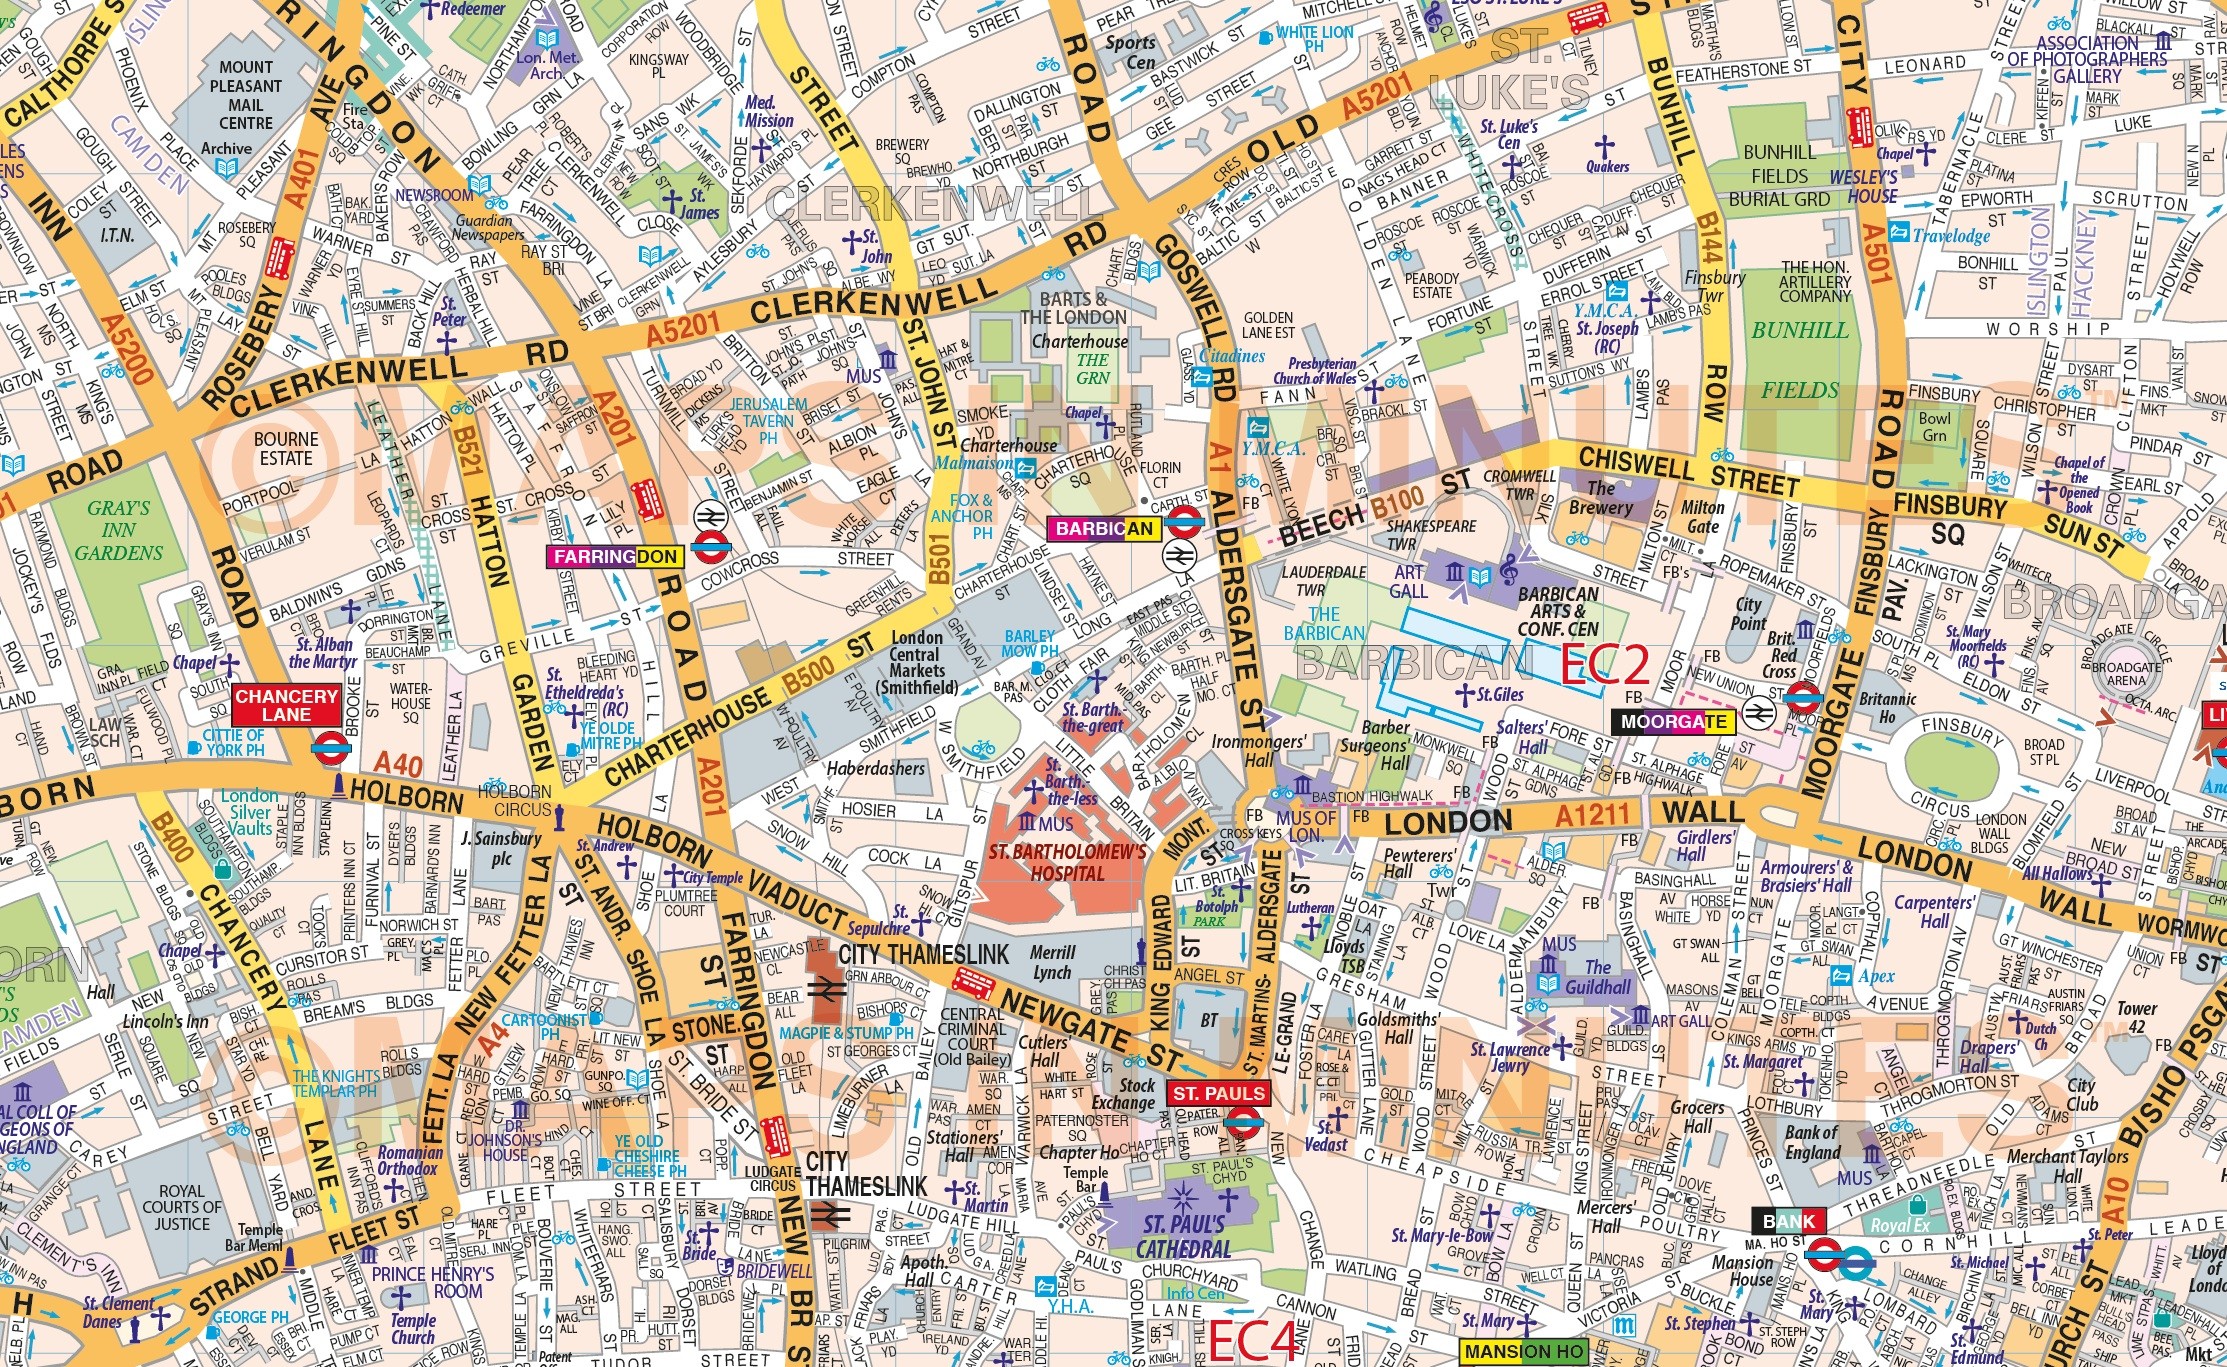 vinyl-central-london-street-map-large-size-1-2m-d-x-1-67m-w